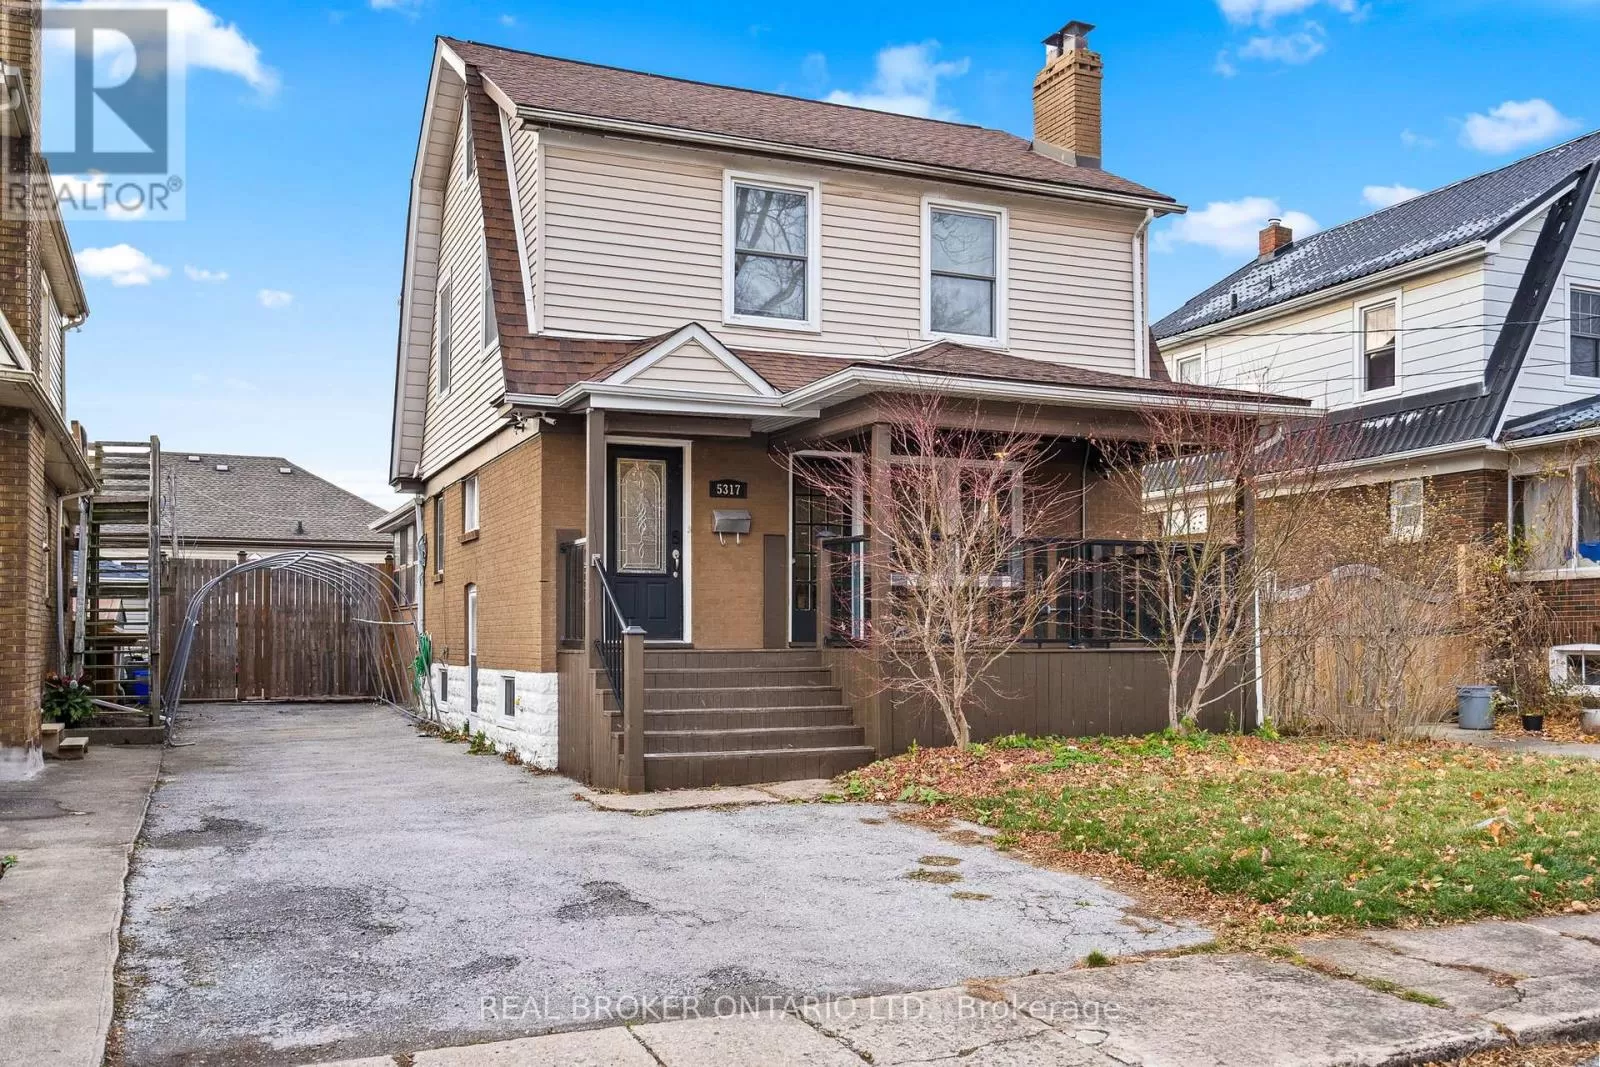 House for rent: 5317 Third Avenue, Niagara Falls, Ontario L2E 4M6